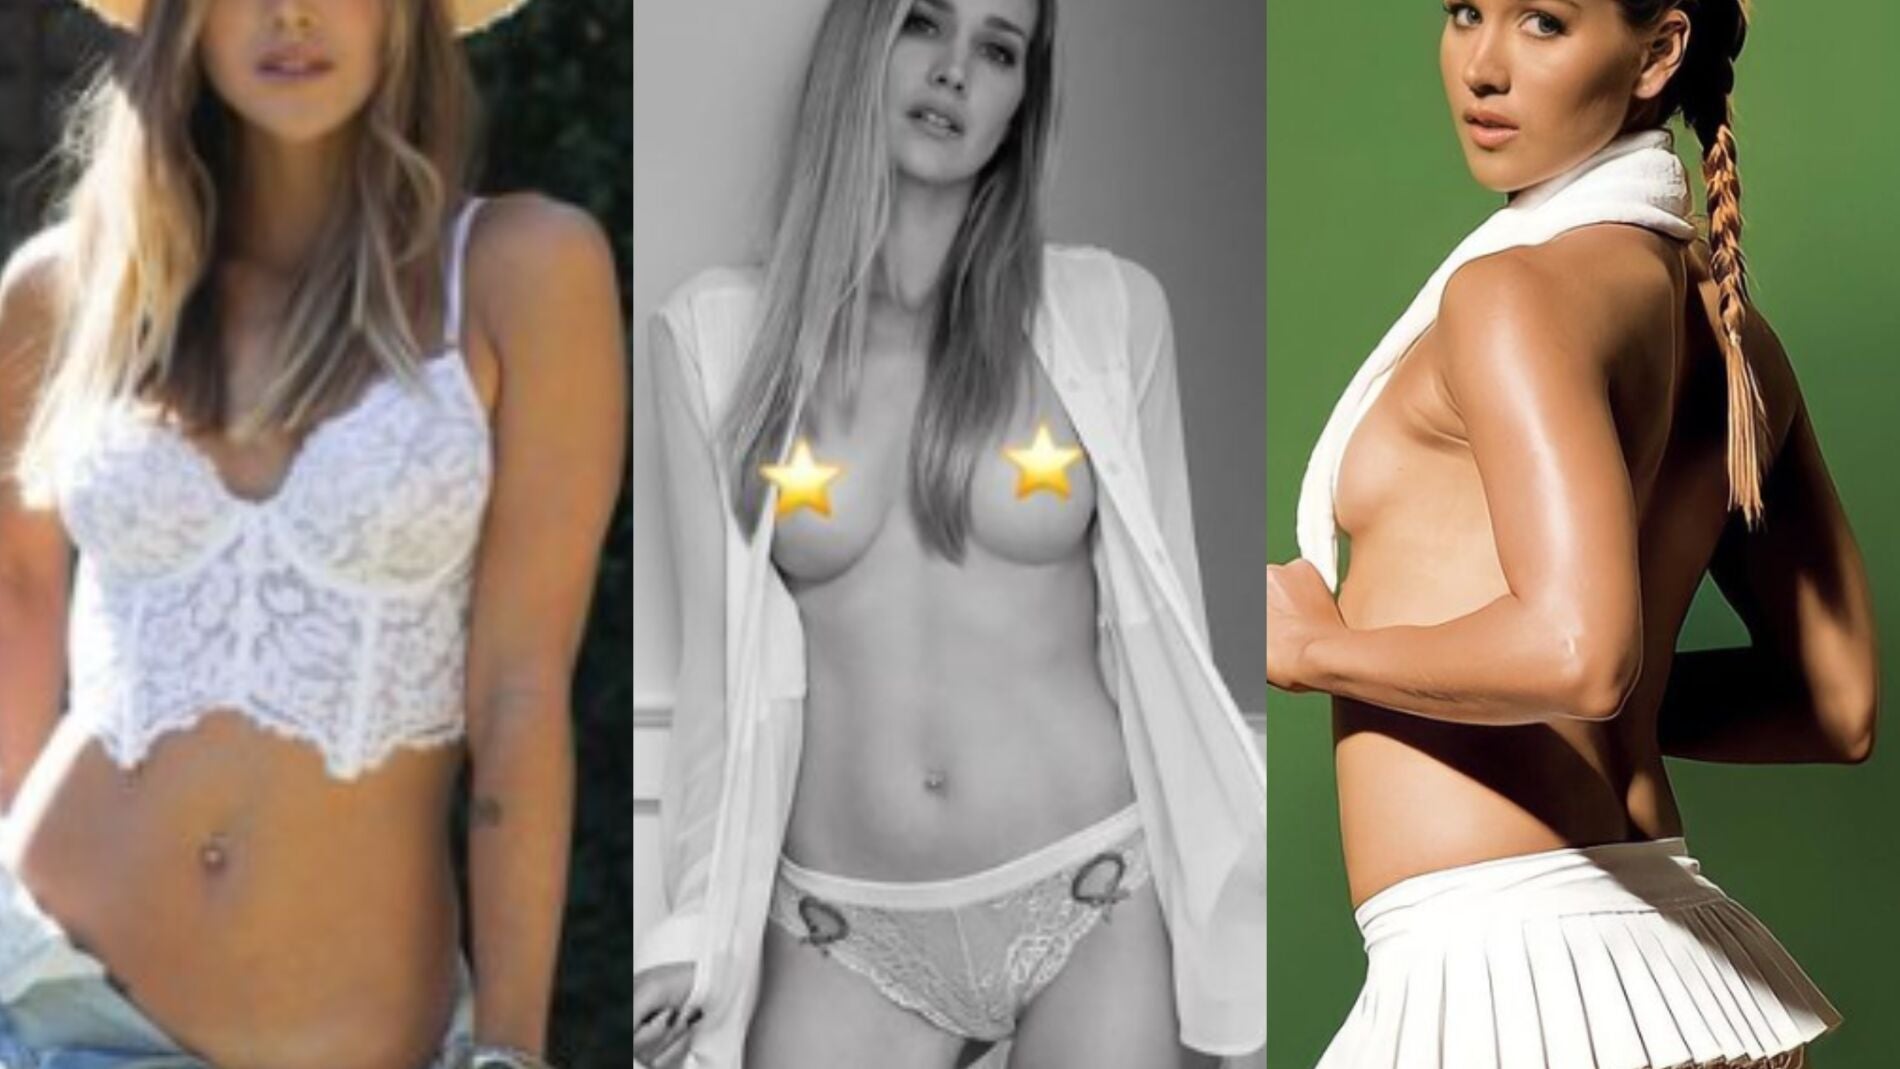 Ashley Harkleroad de estrella de tenis a hacer vídeos porno en Onlyfans